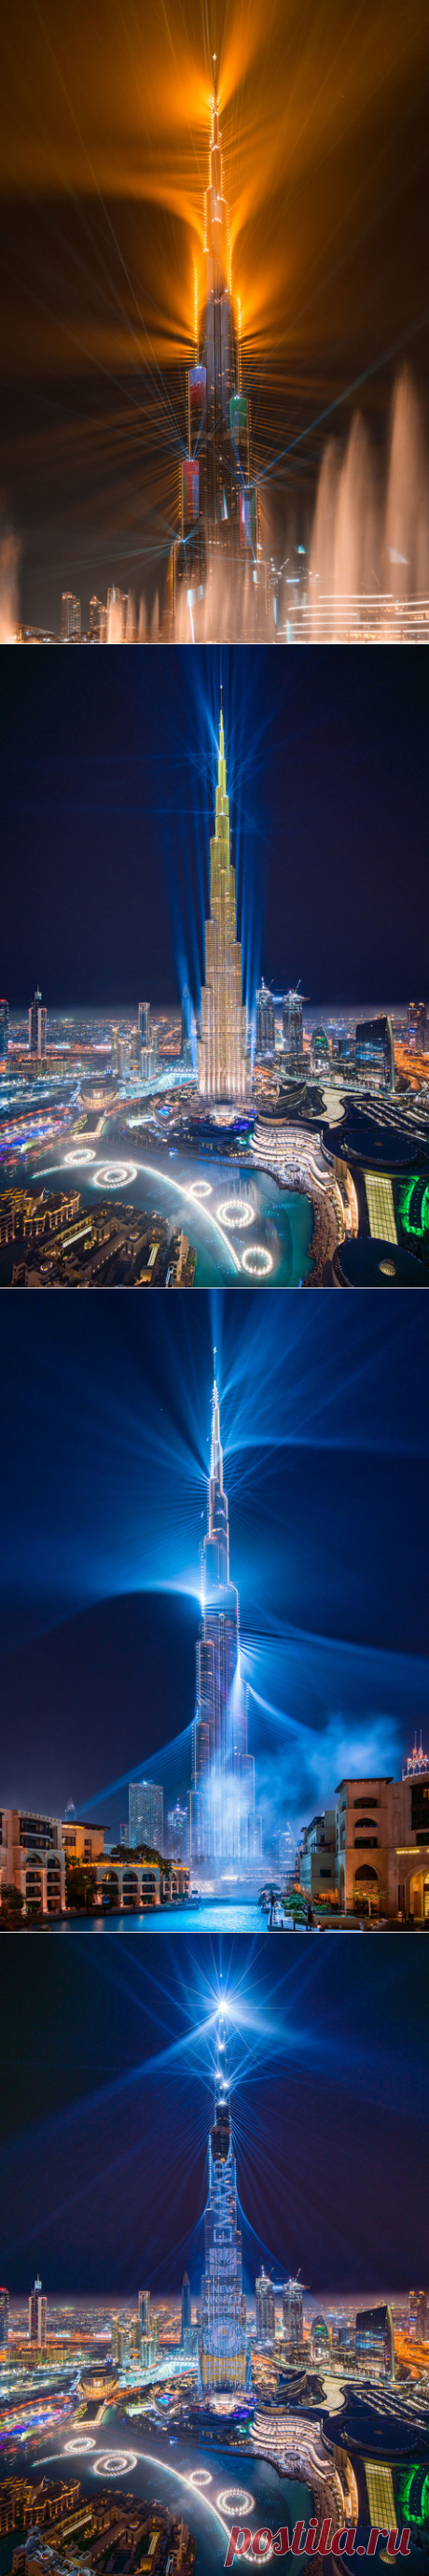 Феерия света в Дубае | Фотоискусство